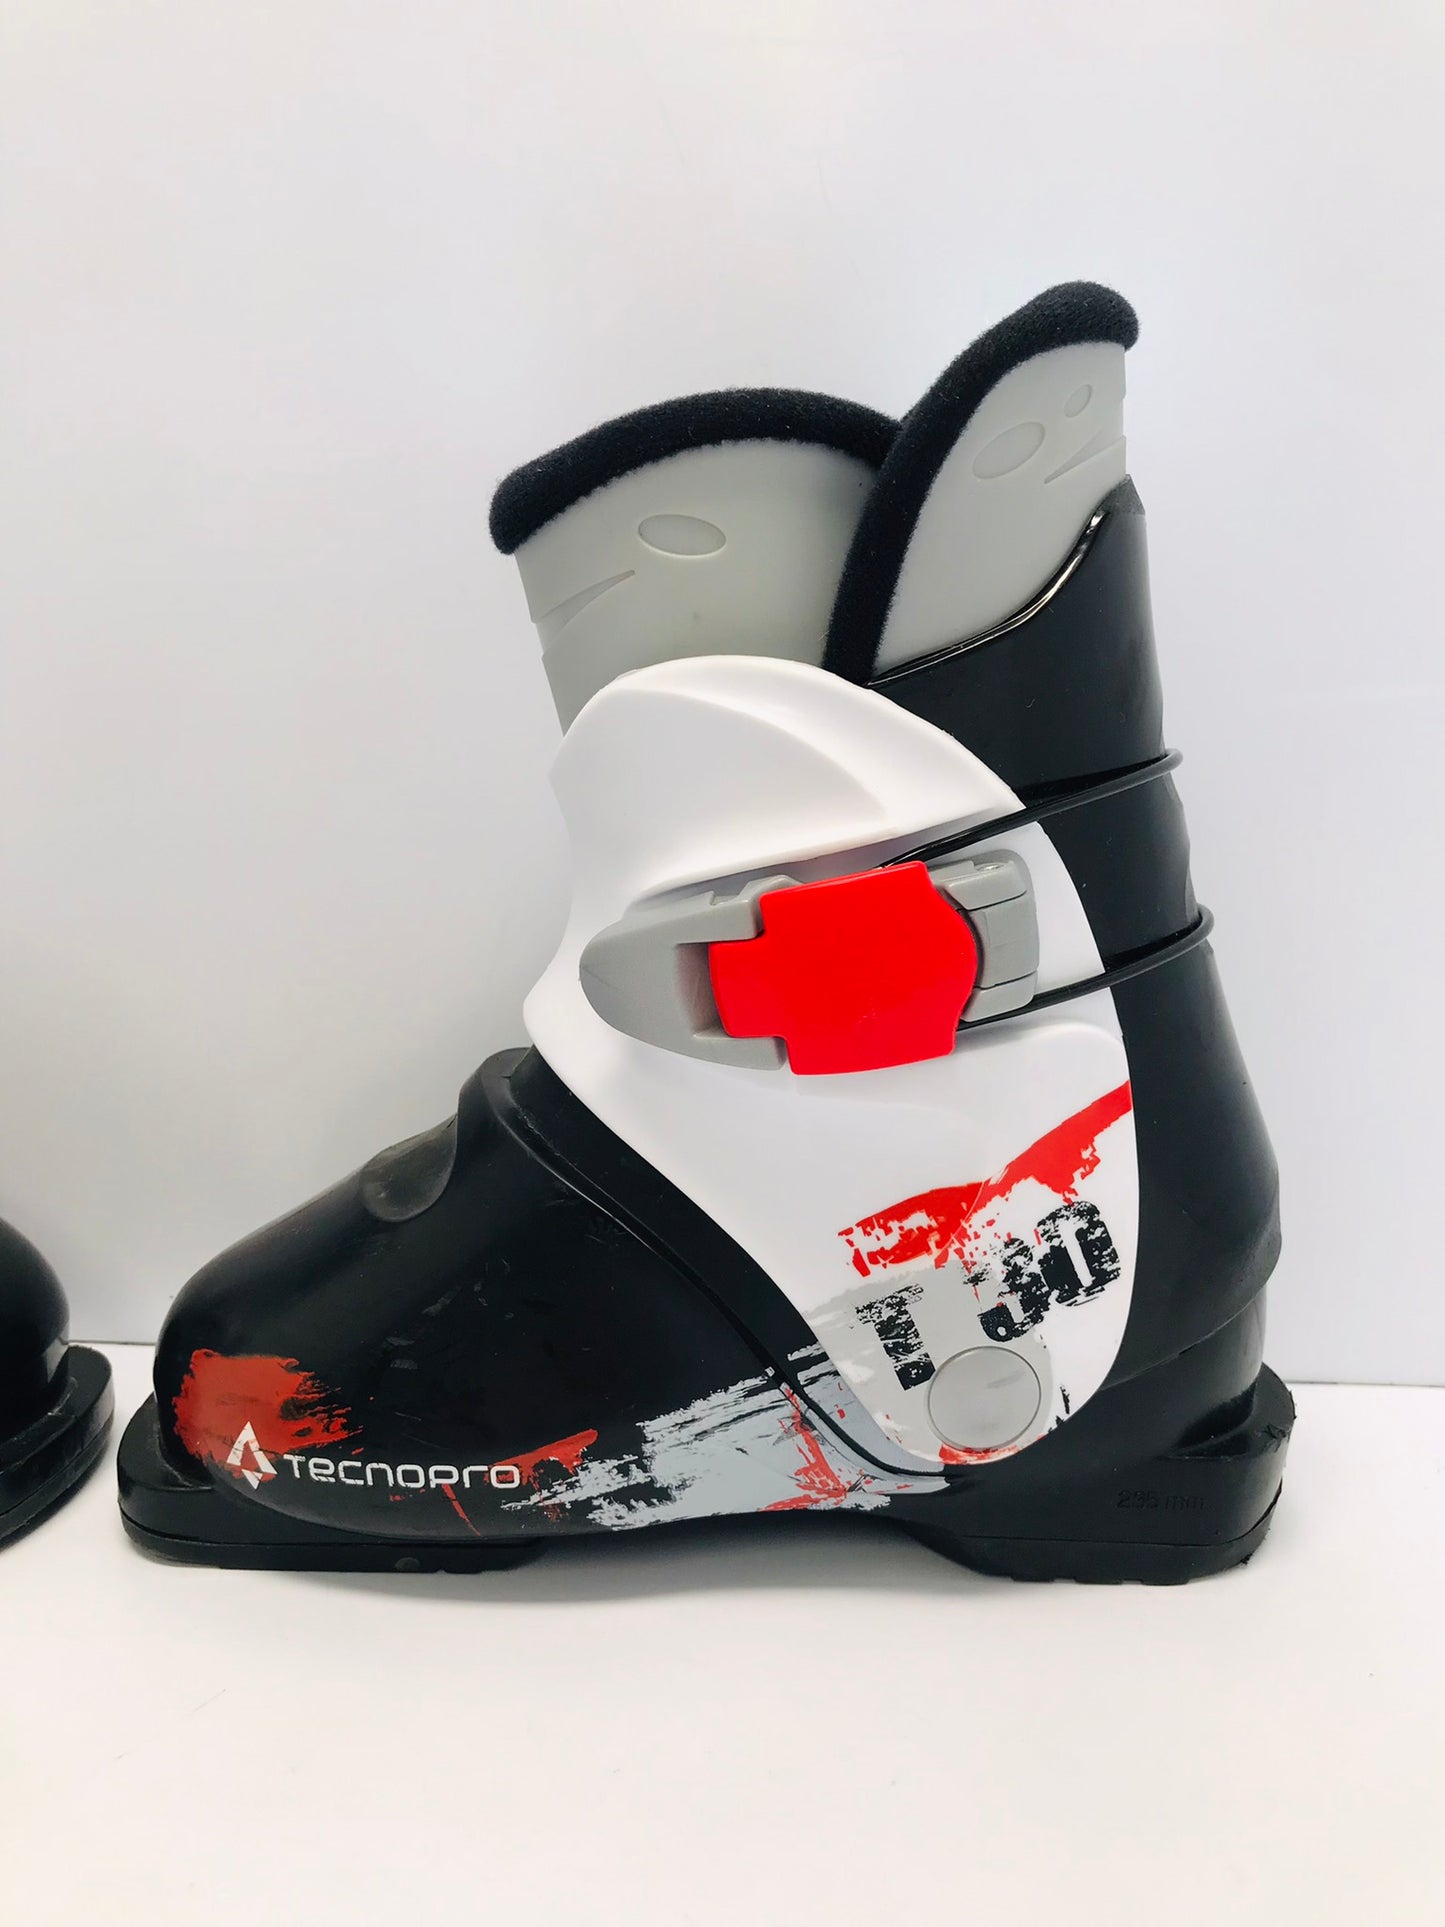 Ski Boots Mondo Size 19.5 Child Size 13  235 mm Tecno Pro Black White Like New